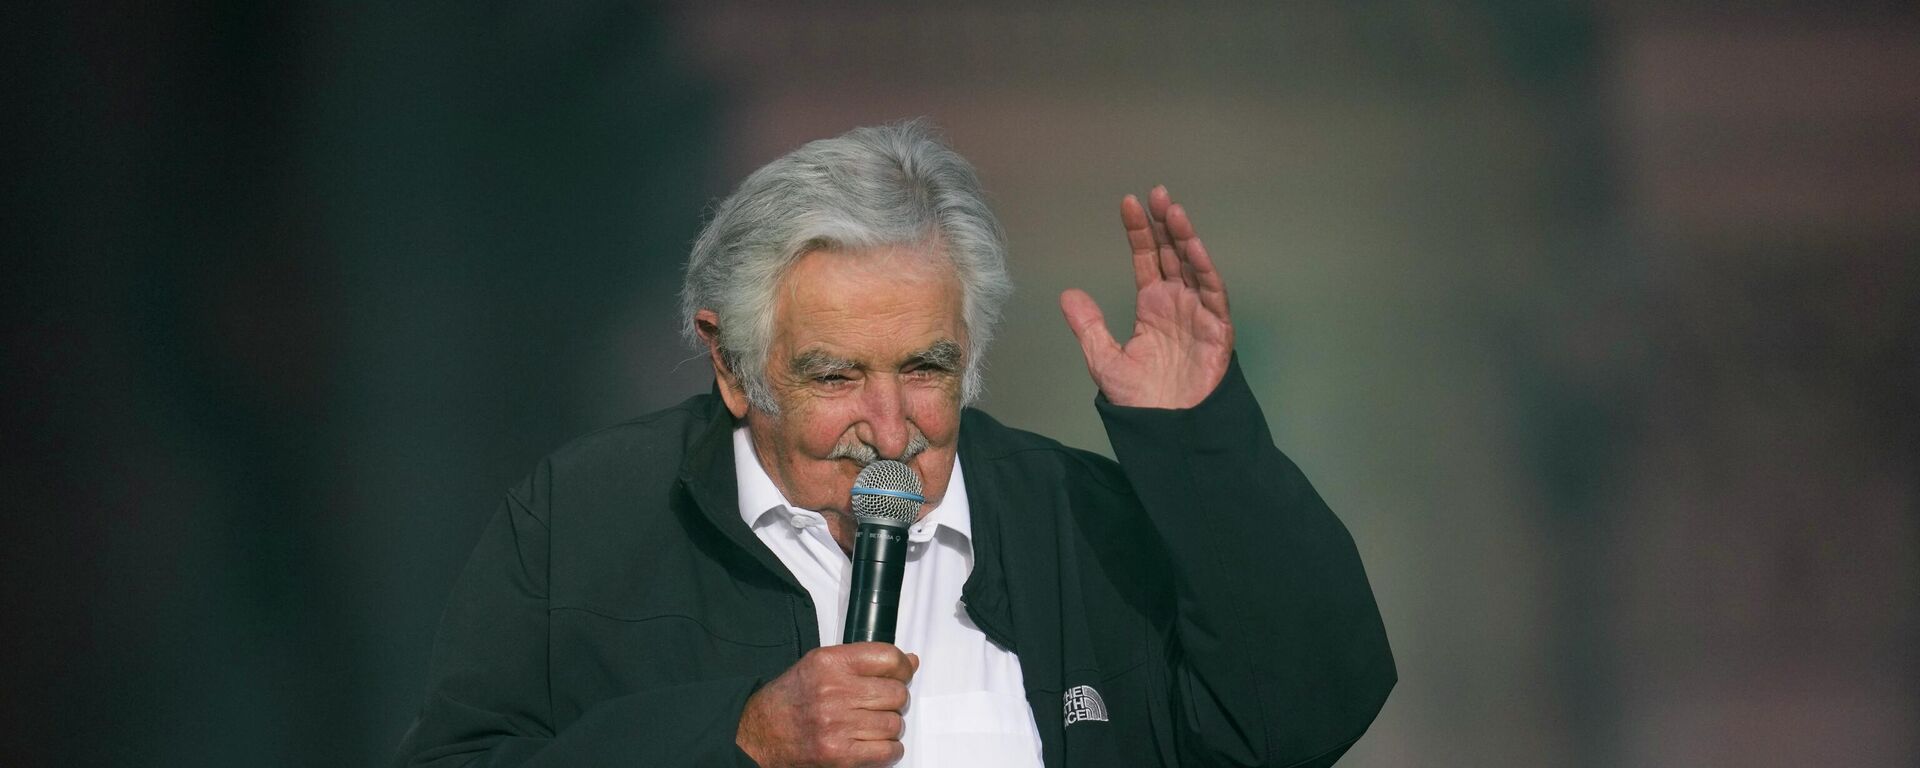 El expresidente uruguayo José 'Pepe' Mujica durante un acto en Buenos Aires en diciembre de 2021 - Sputnik Mundo, 1920, 12.07.2022